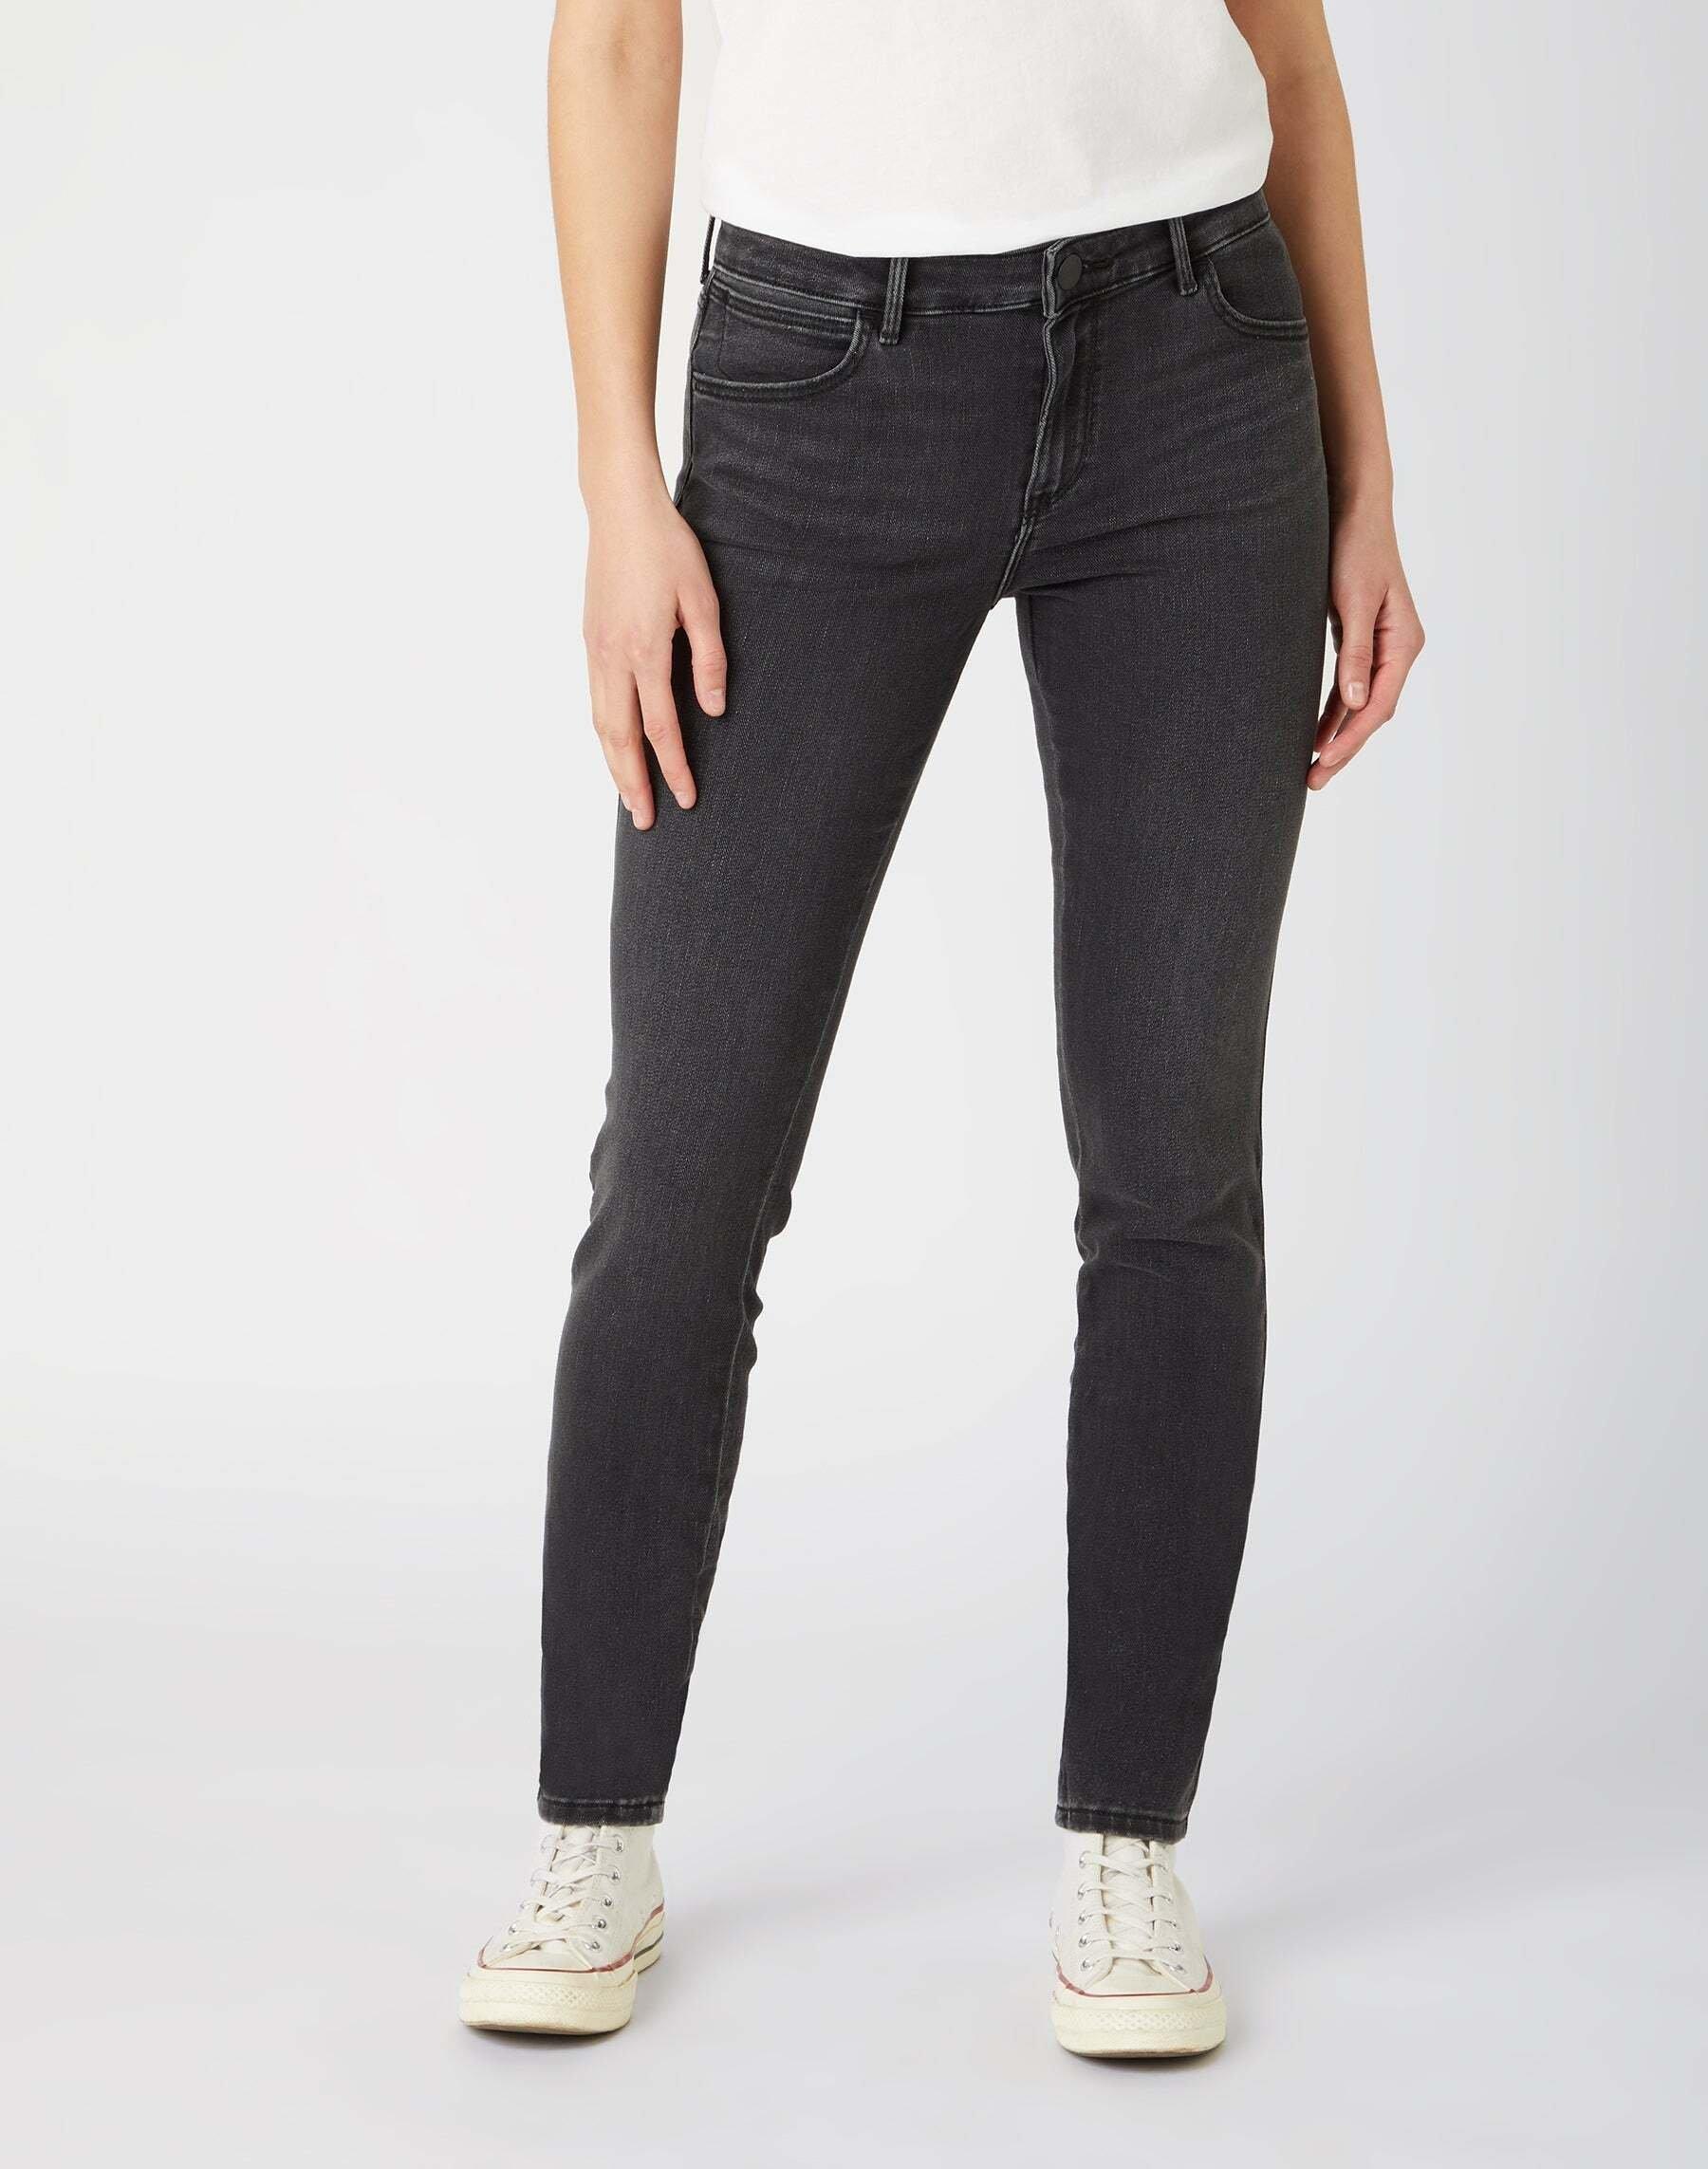 Jeans Skinny Fit Skinny Damen Schwarz Leicht L32/W24 von Wrangler